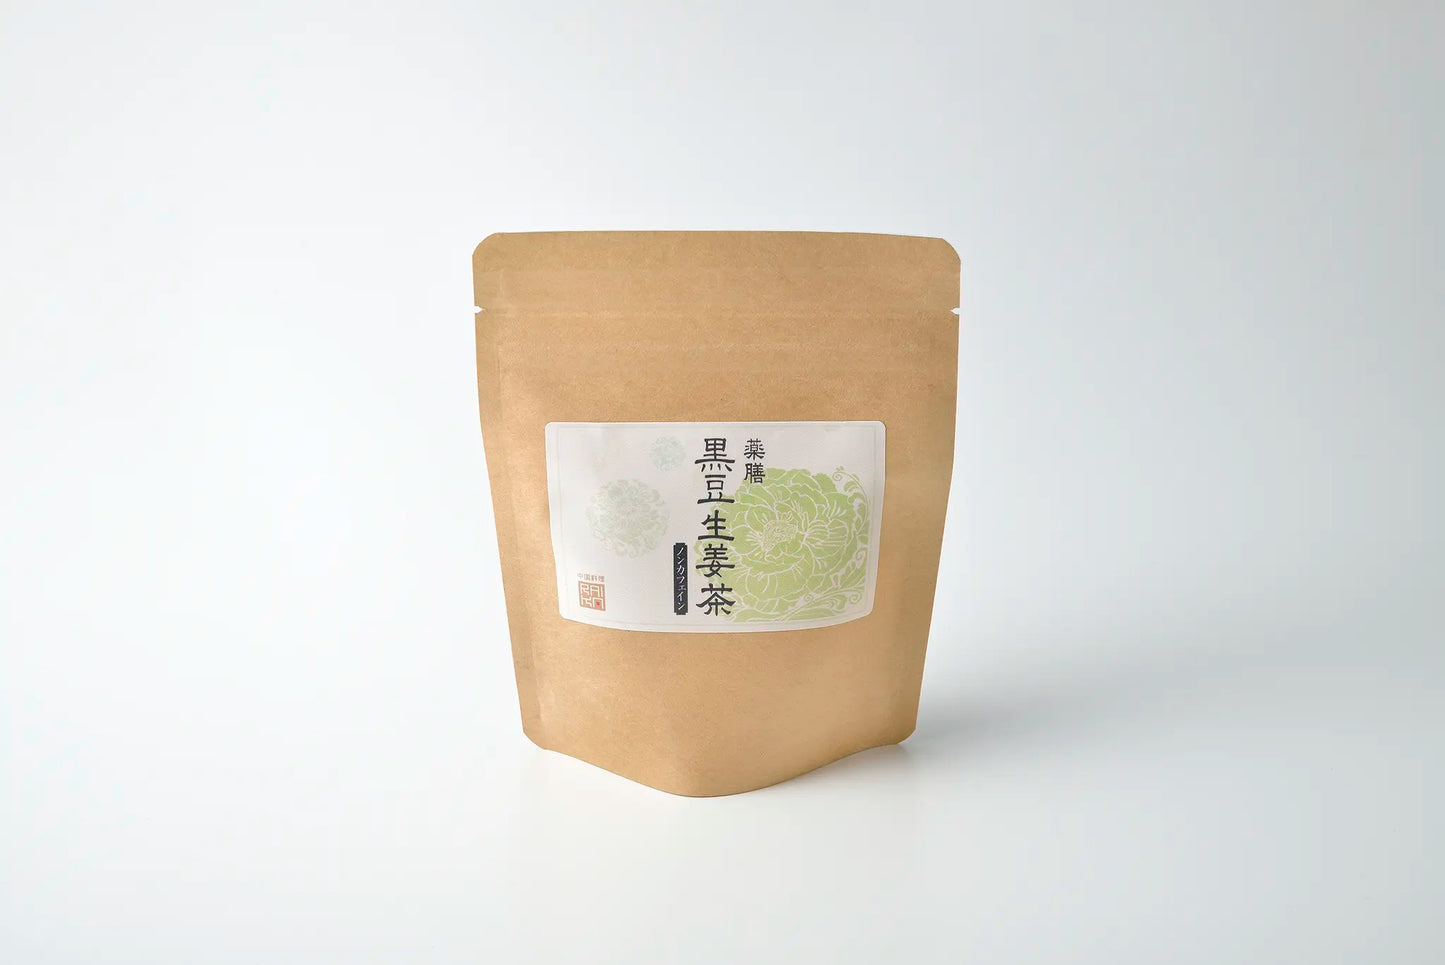 礼華特製 黒豆生姜茶